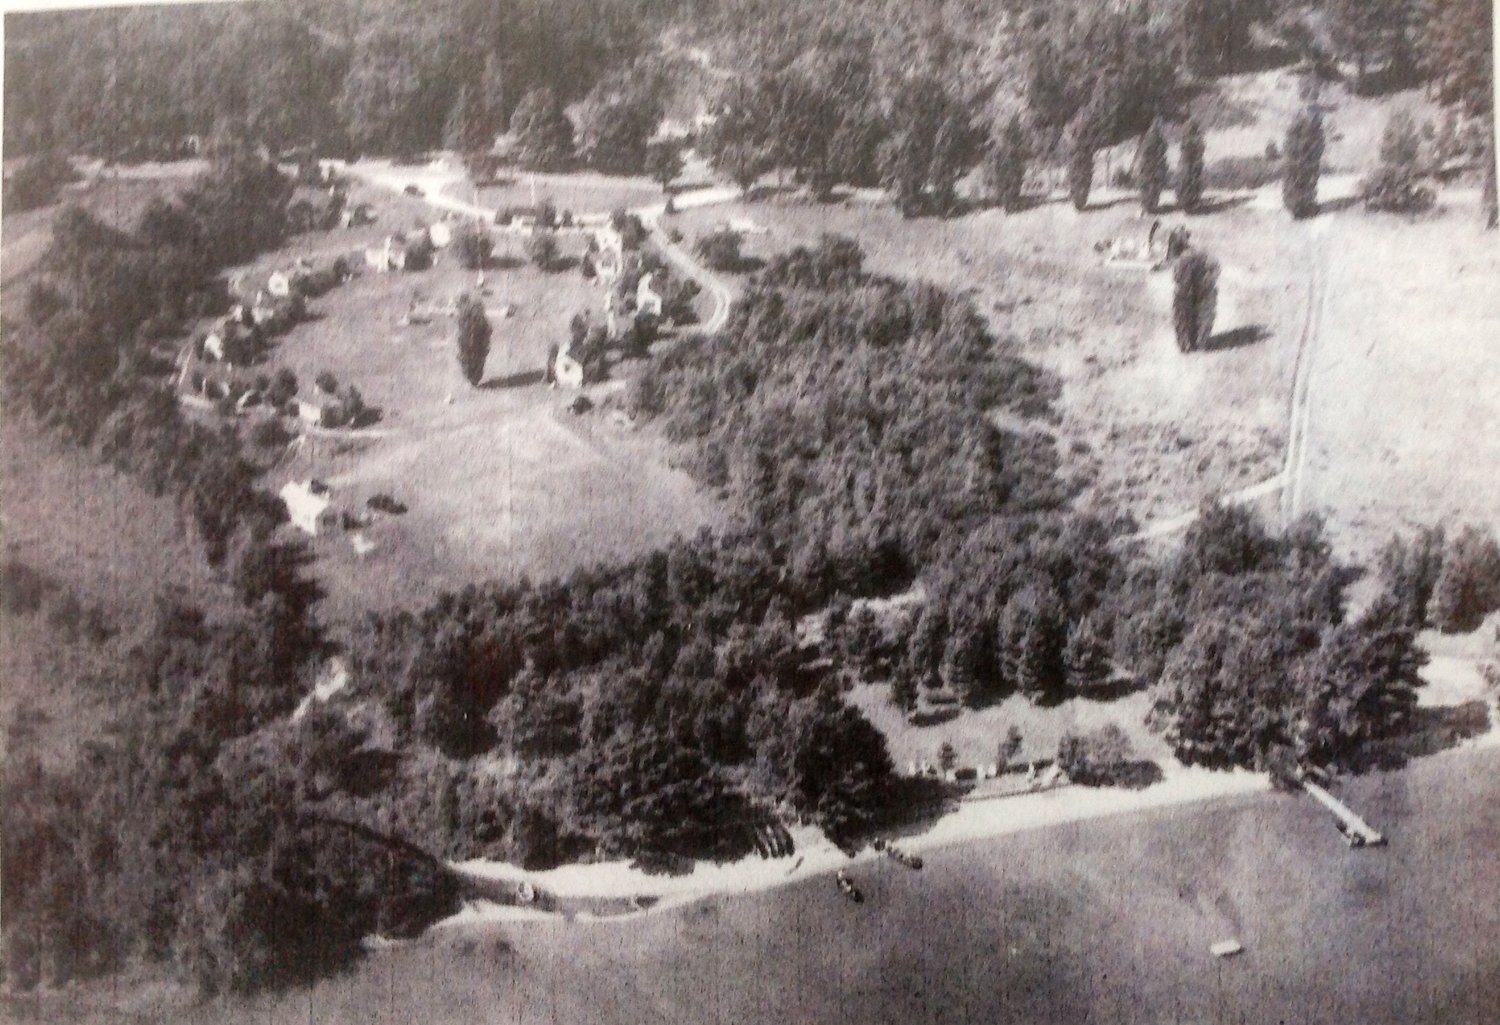 Cape Cod Village Club circa 1950.